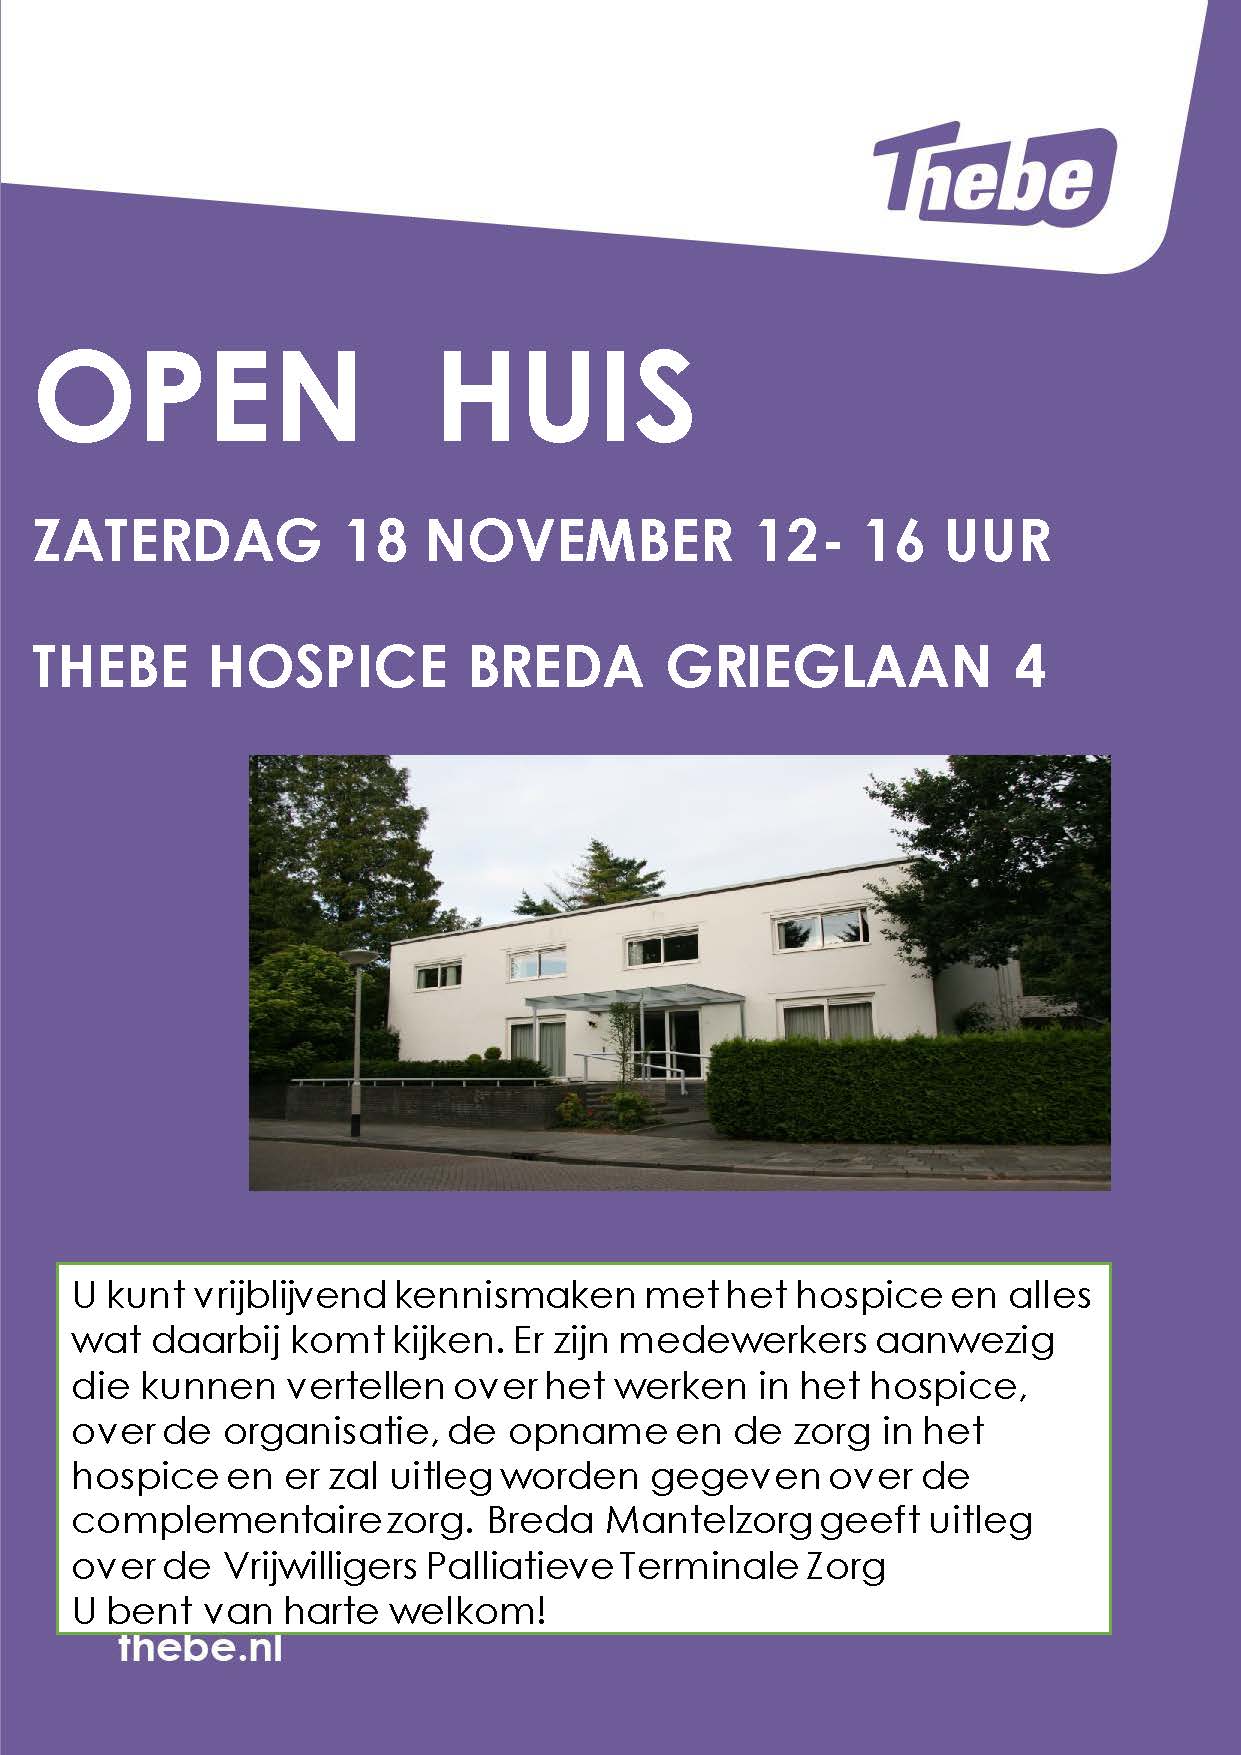 Thebe Hospice Breda